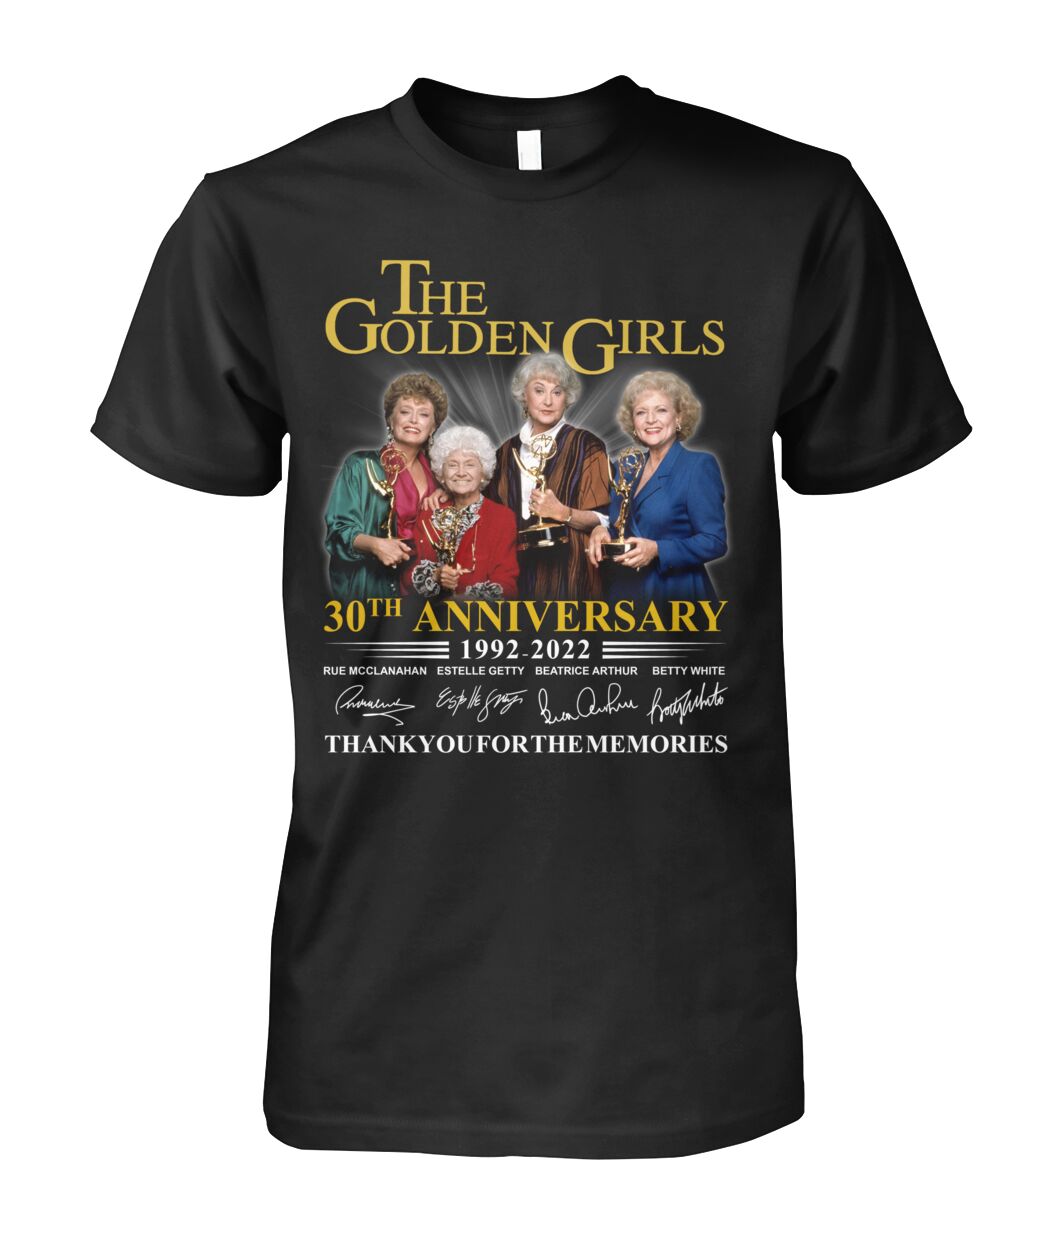 The Golden Girls 30th Anniversary 1992-2022 shirt, hoodie 1